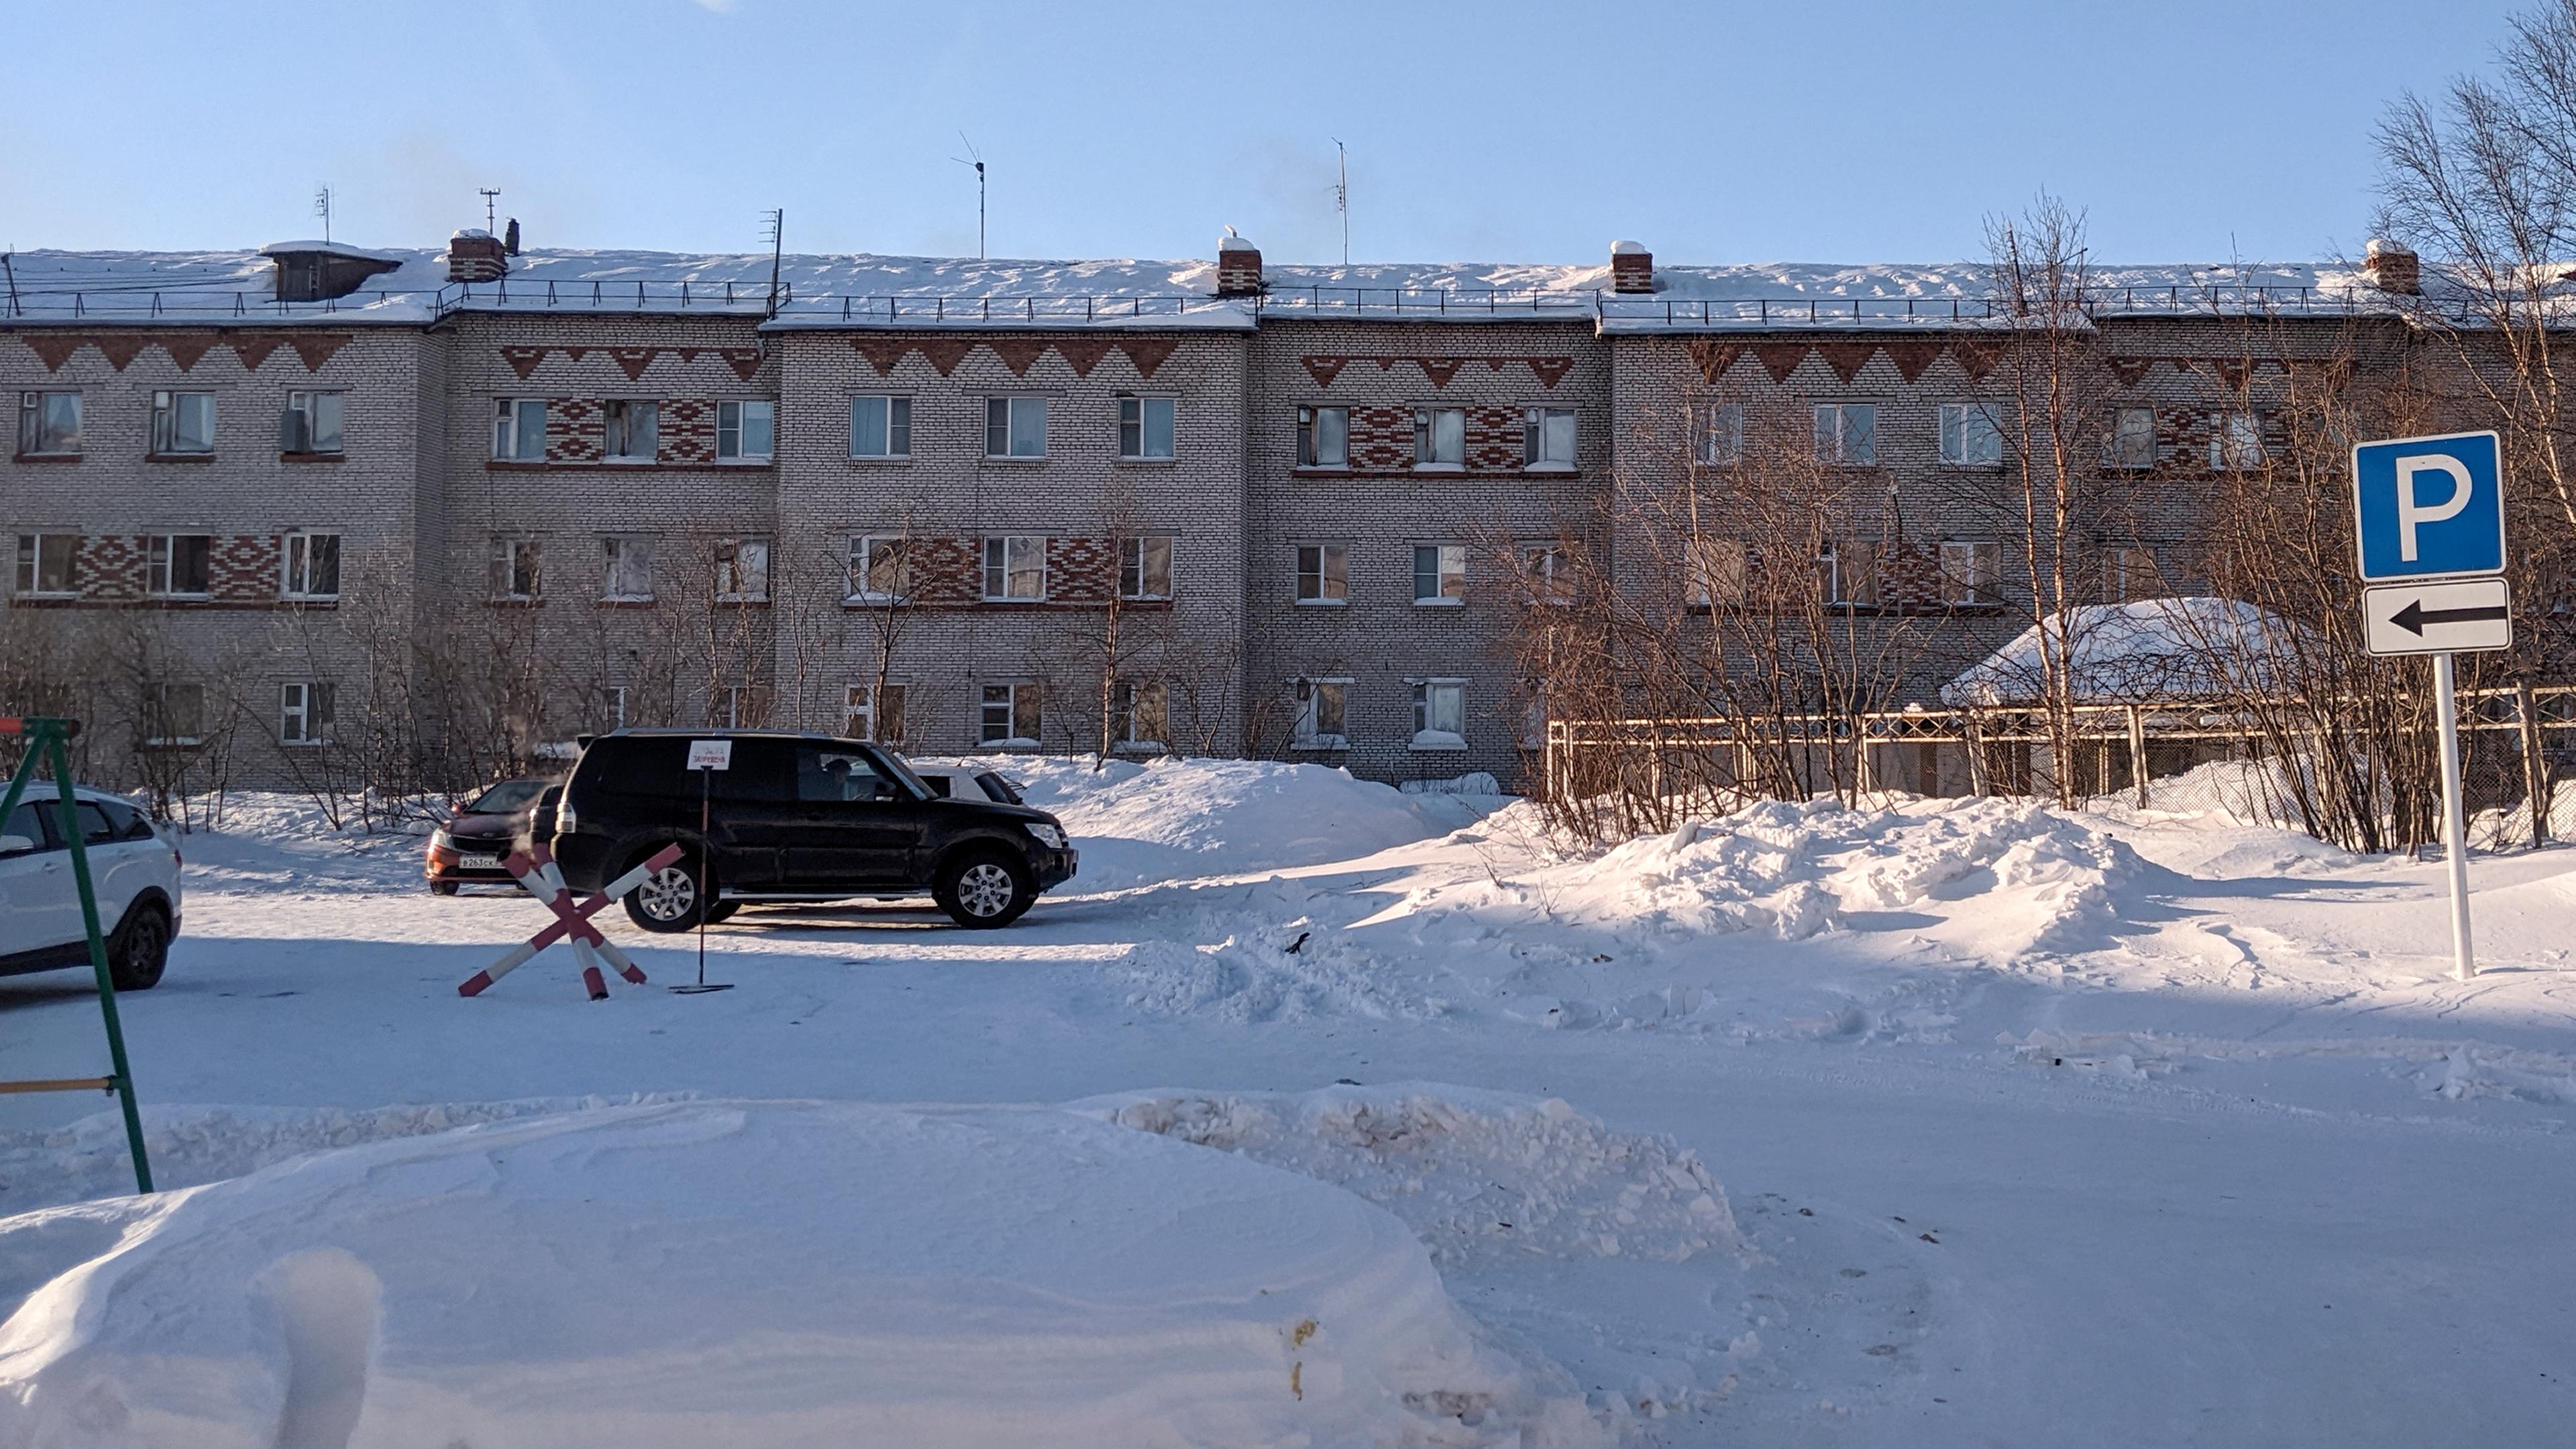 Ljudmila Nawalnajas Wagen vor der Gefängniskolonie in der Region Jamal-Nenzen